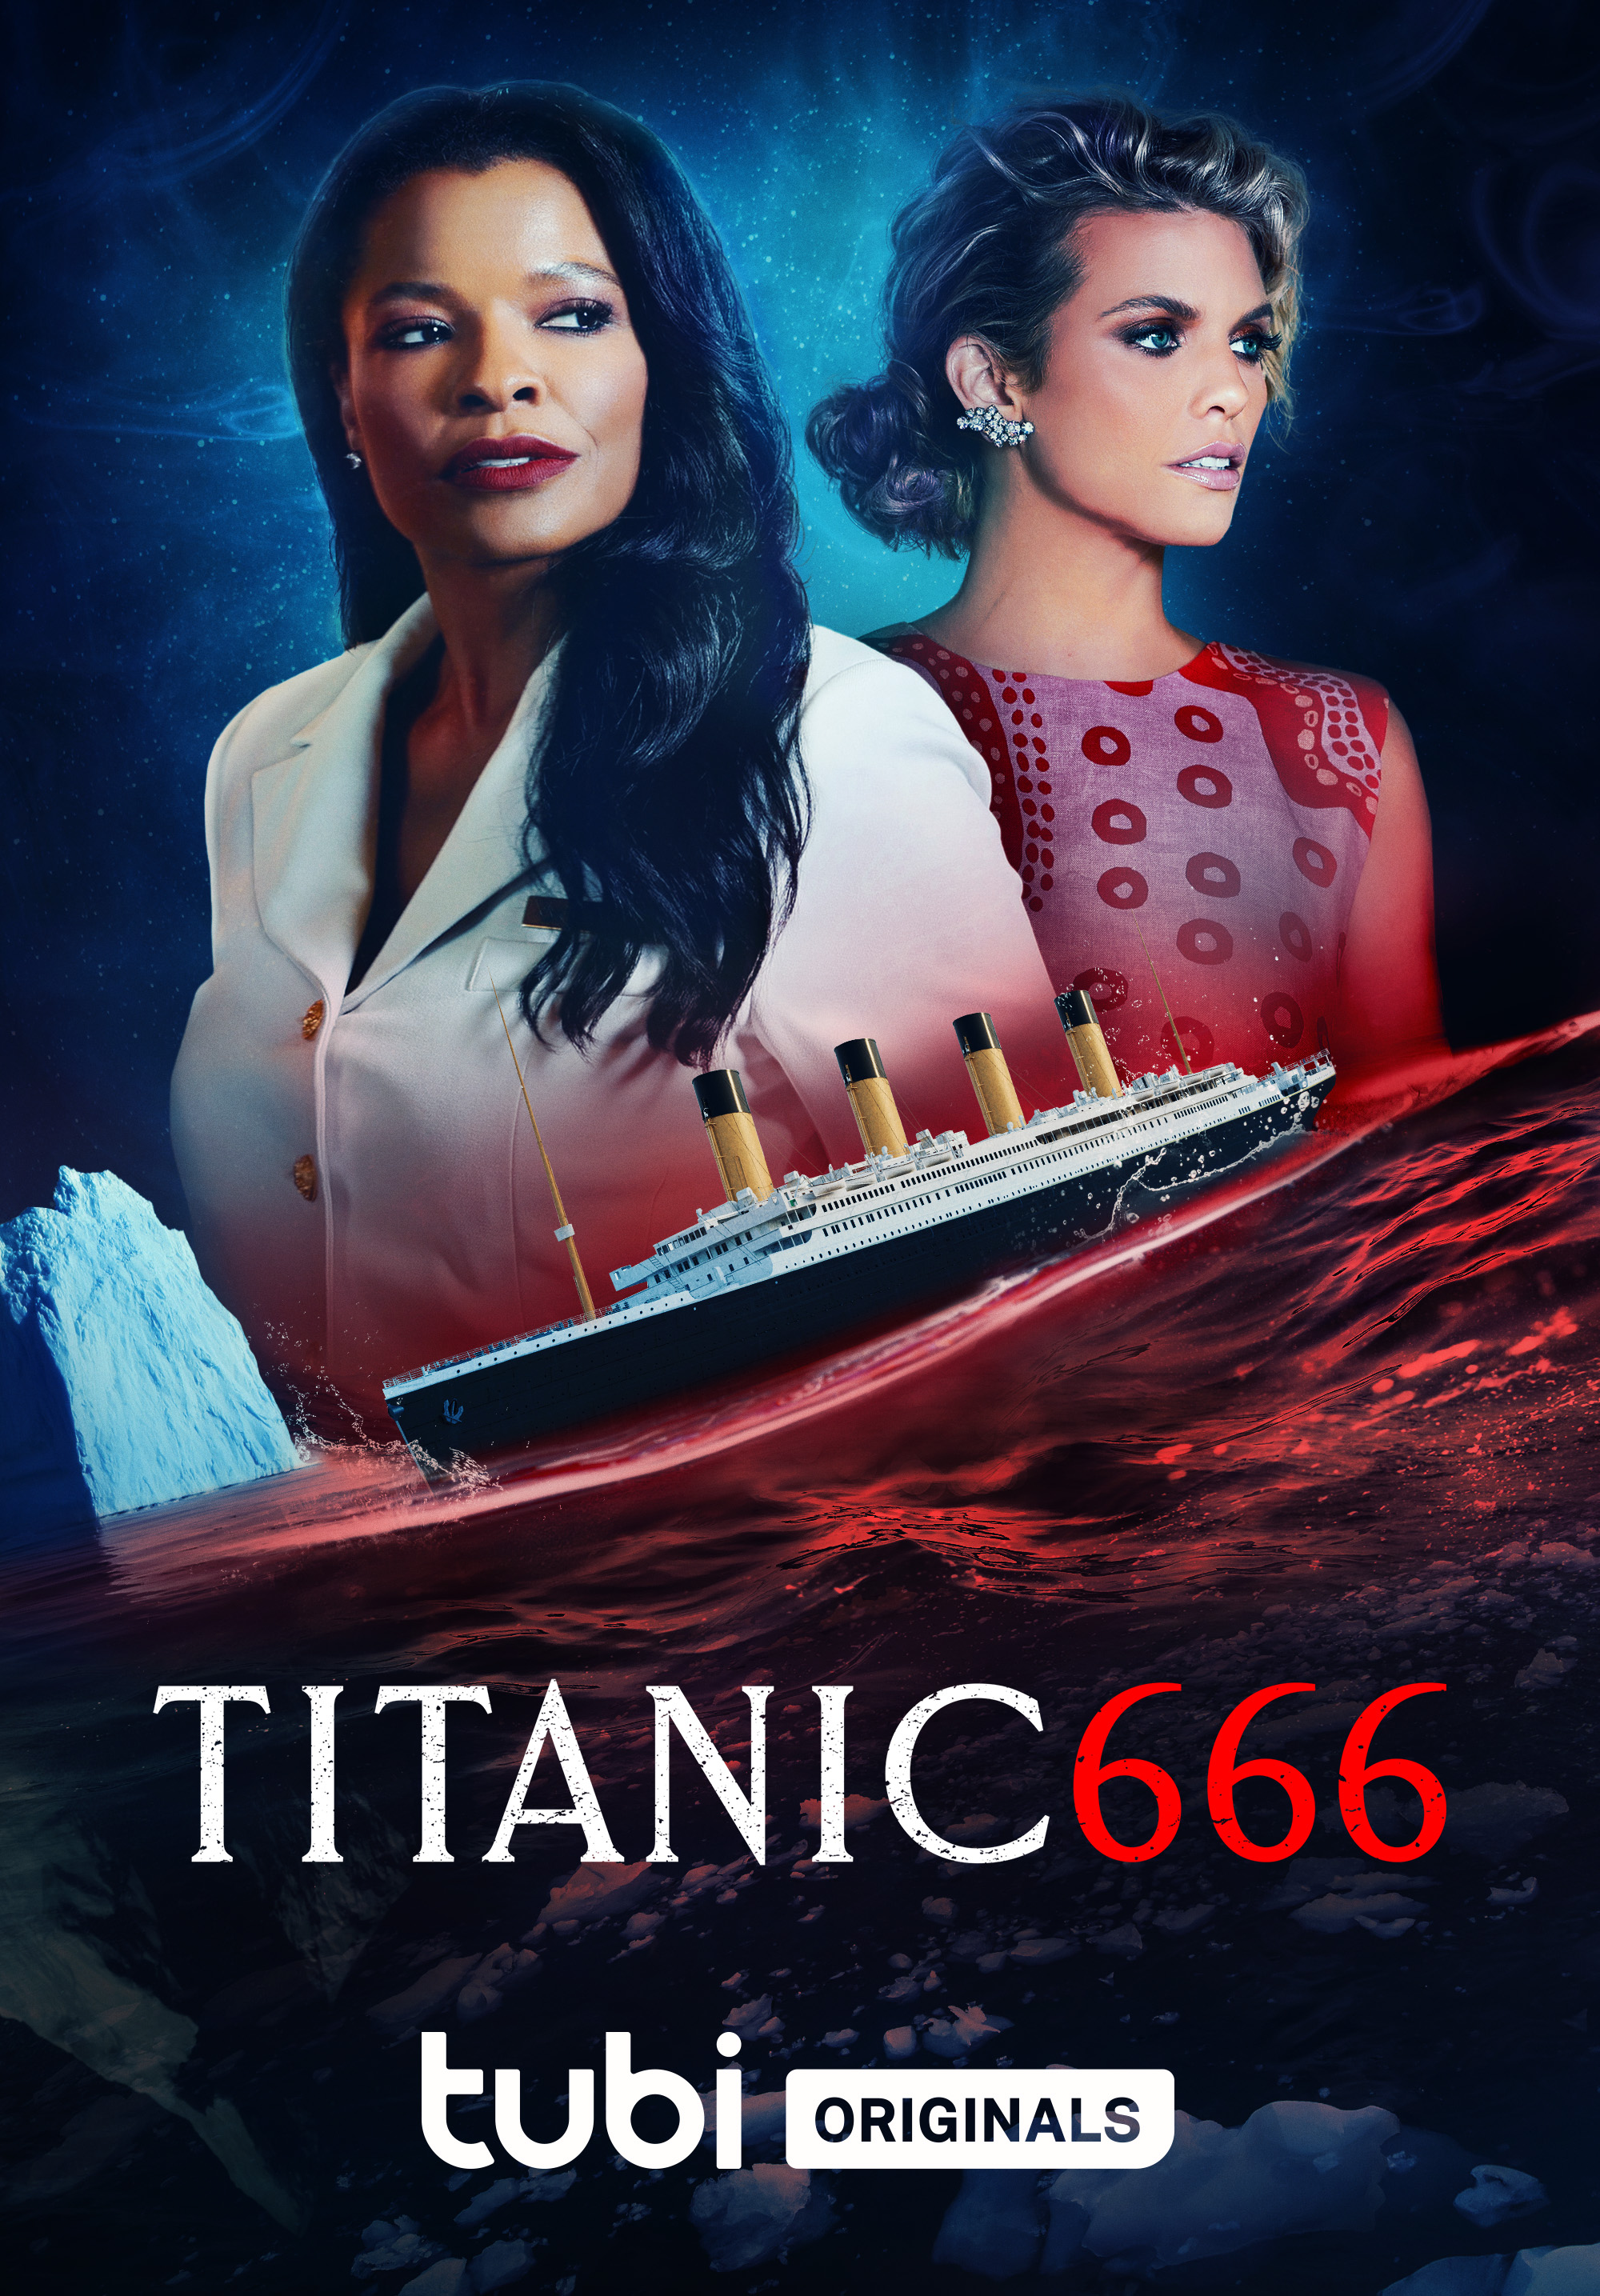 christine ringuette recommends titanic full movie downloads pic